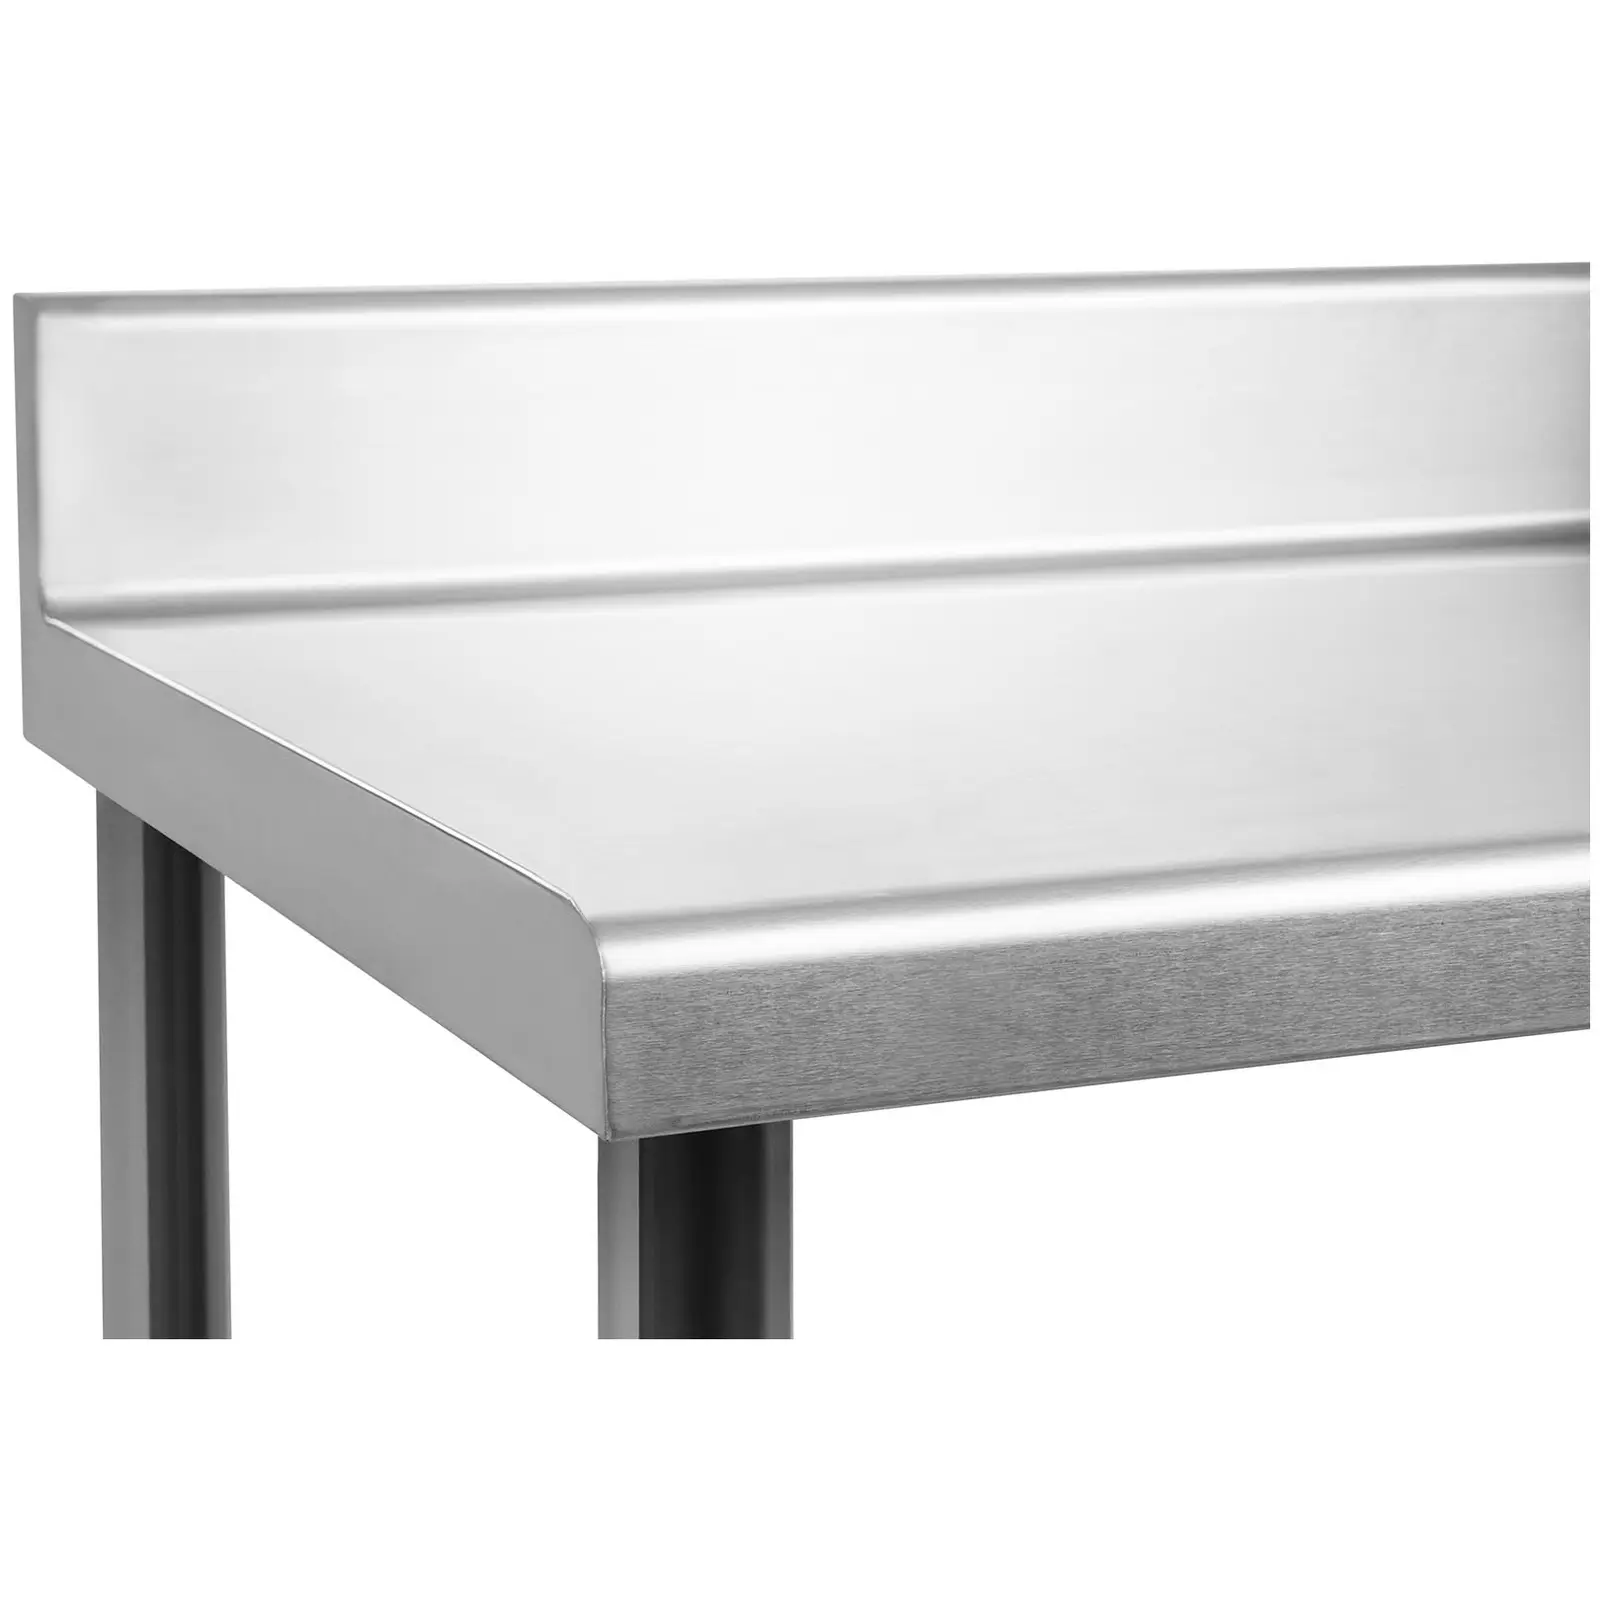 Pracovný stôl z ušľachtilej ocele - 120 x 60 cm - nosnosť 110 kg - s lemom